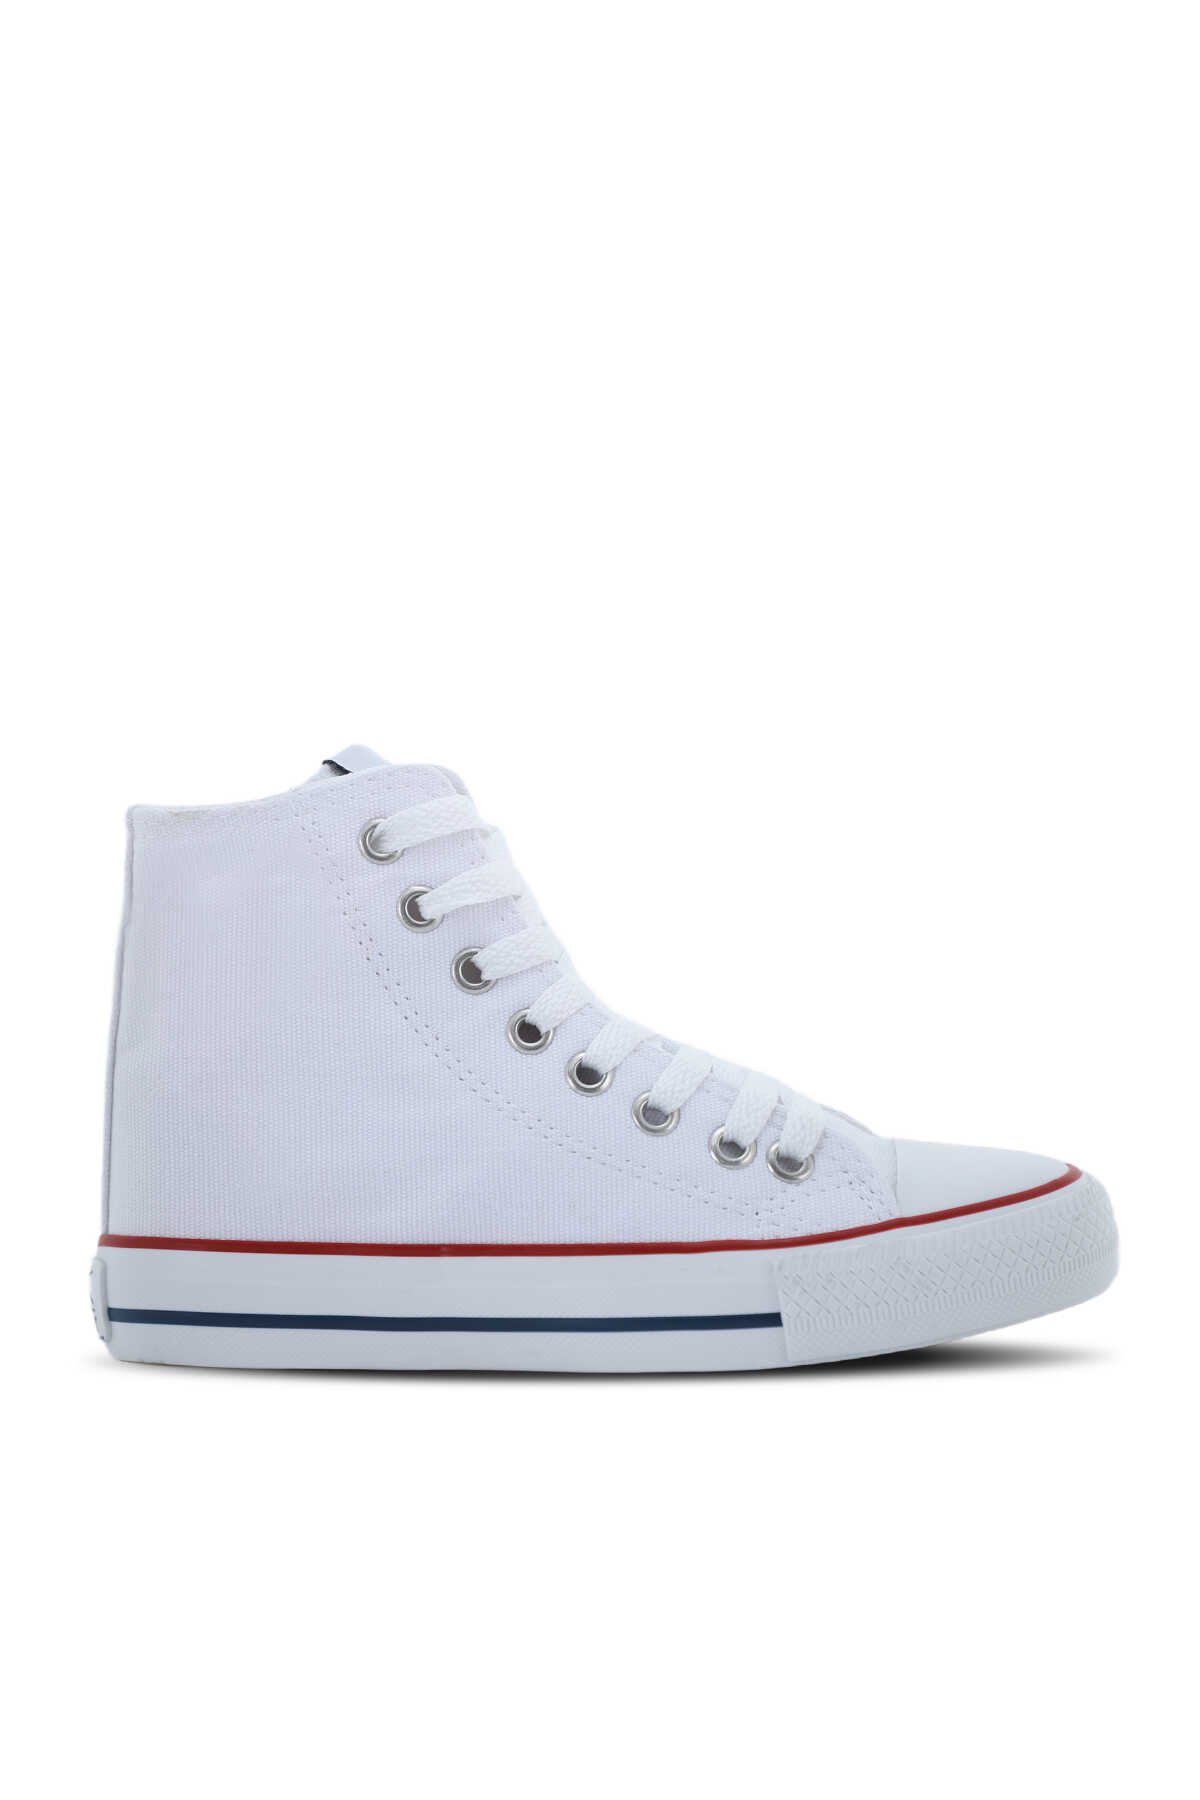 Slazenger - Slazenger SCHOOL Sneaker Kadın Ayakkabı Beyaz